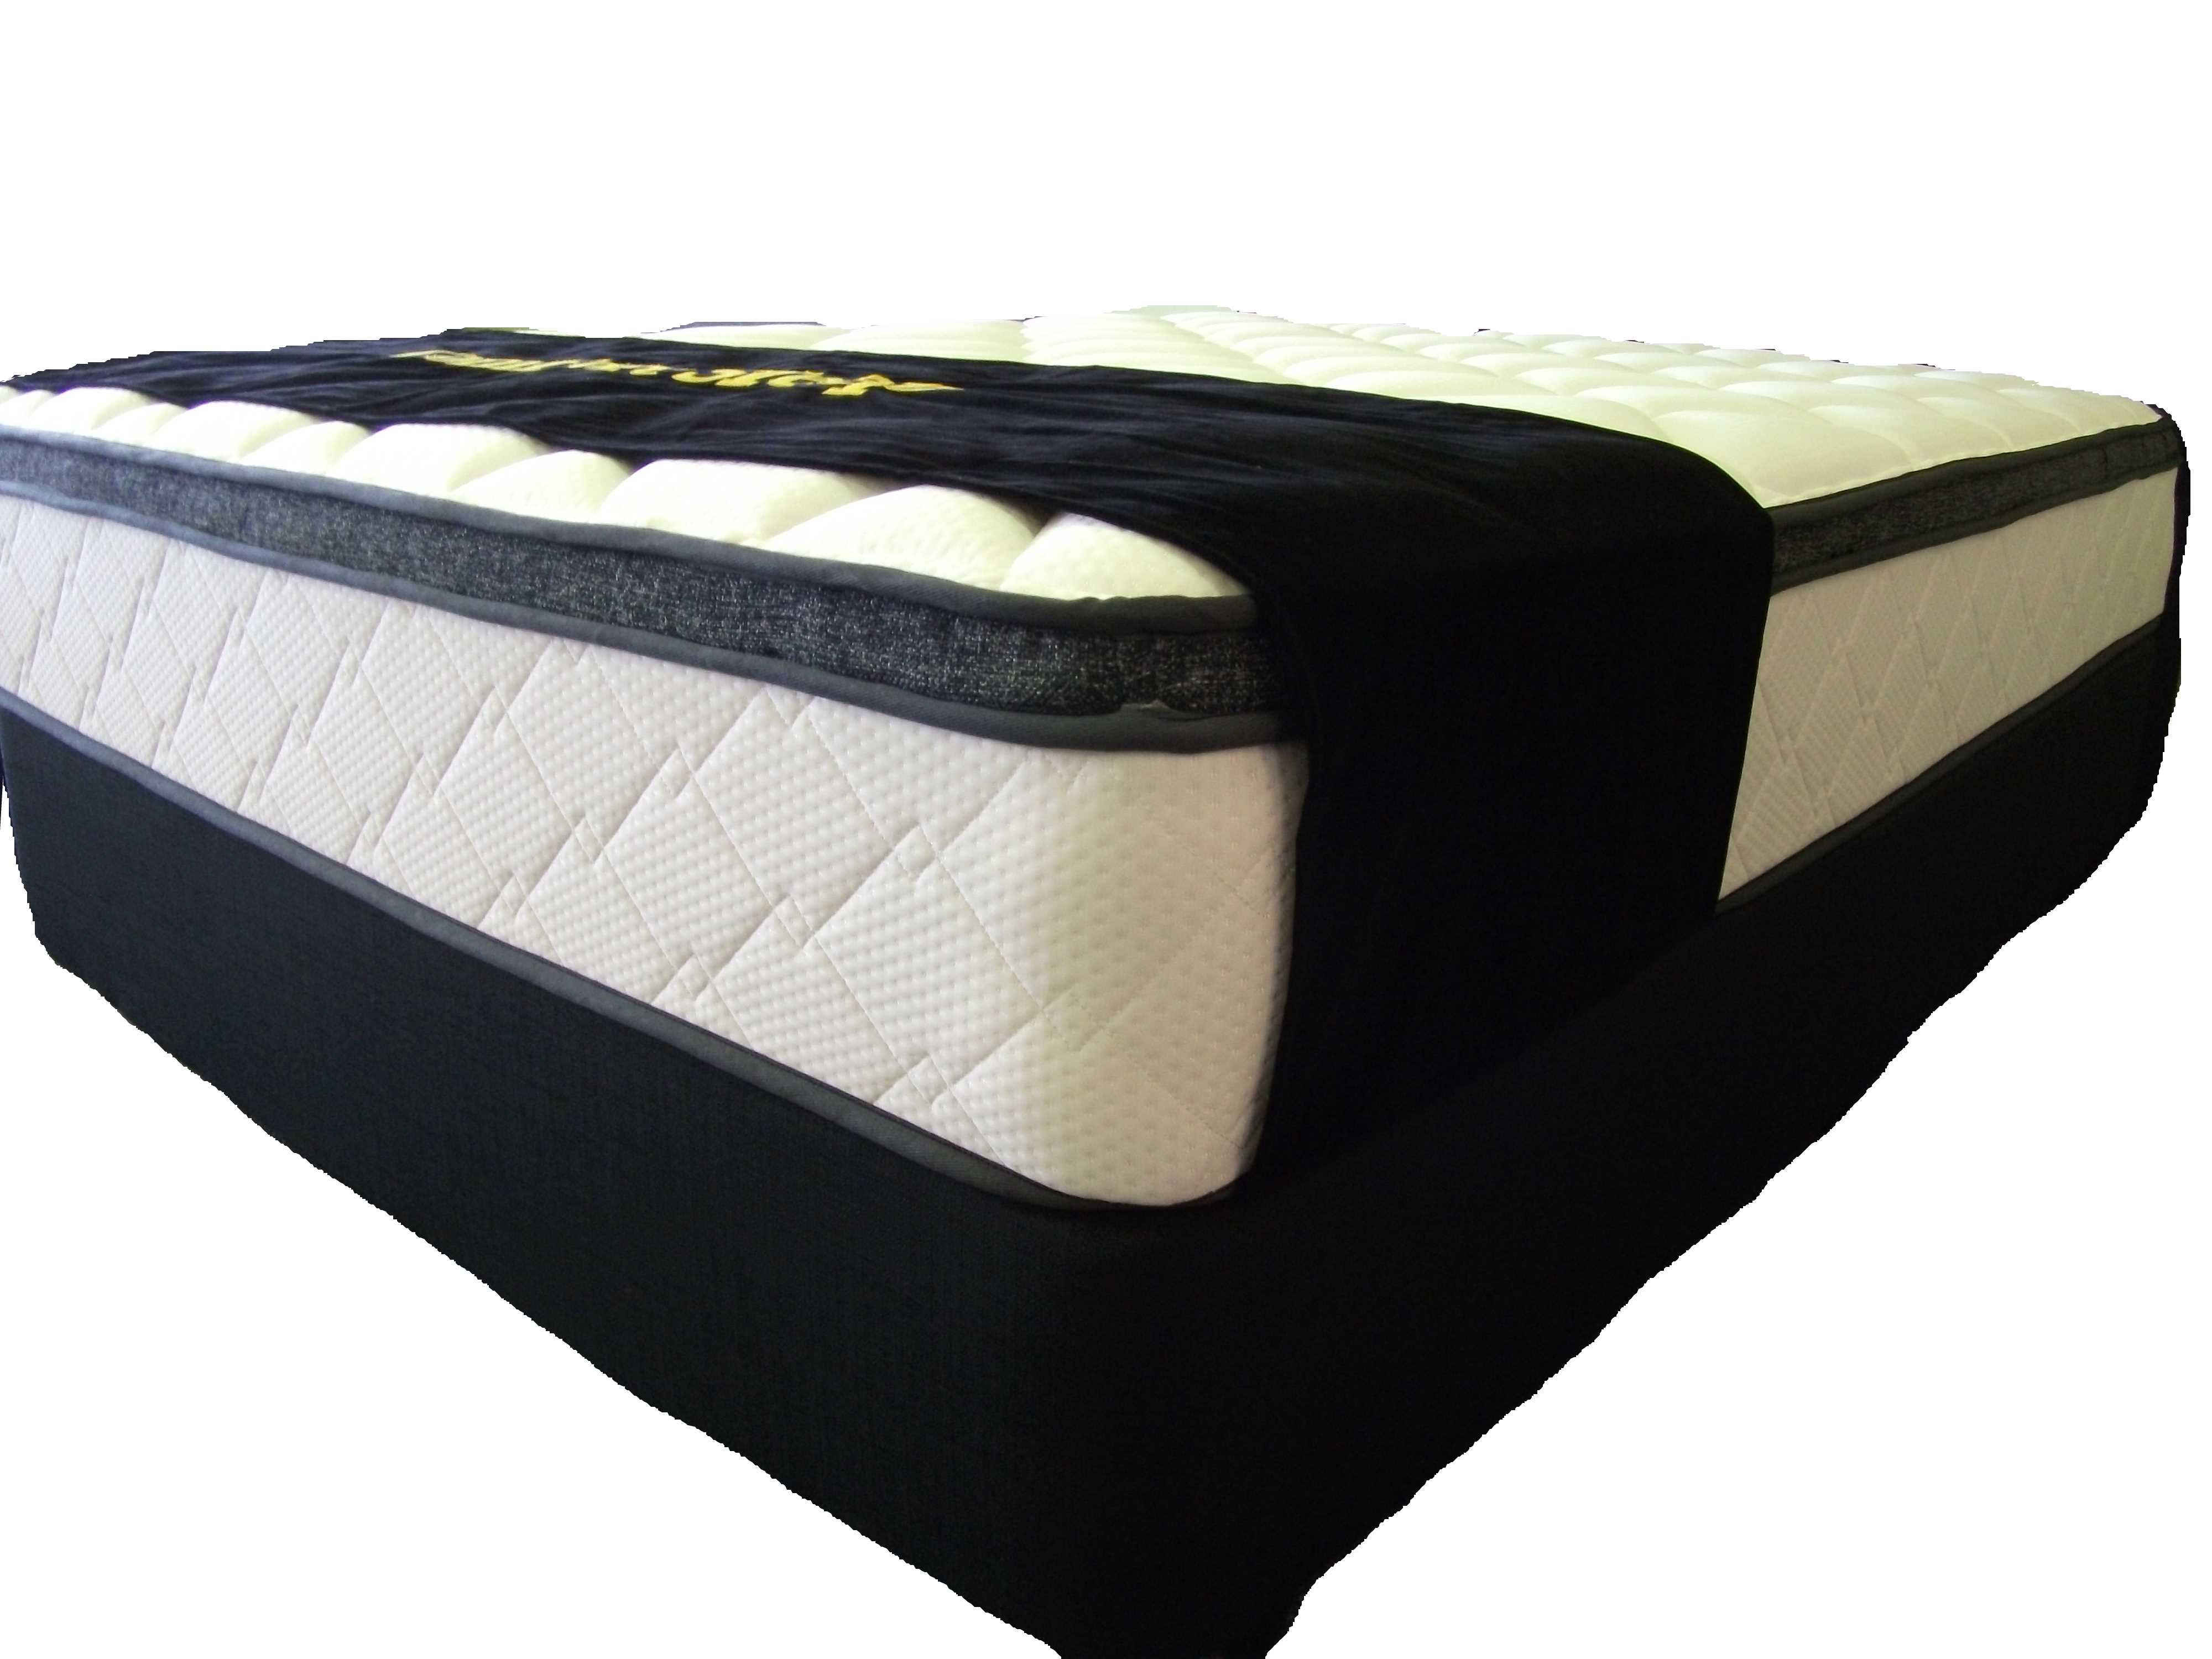 new single foam mattress